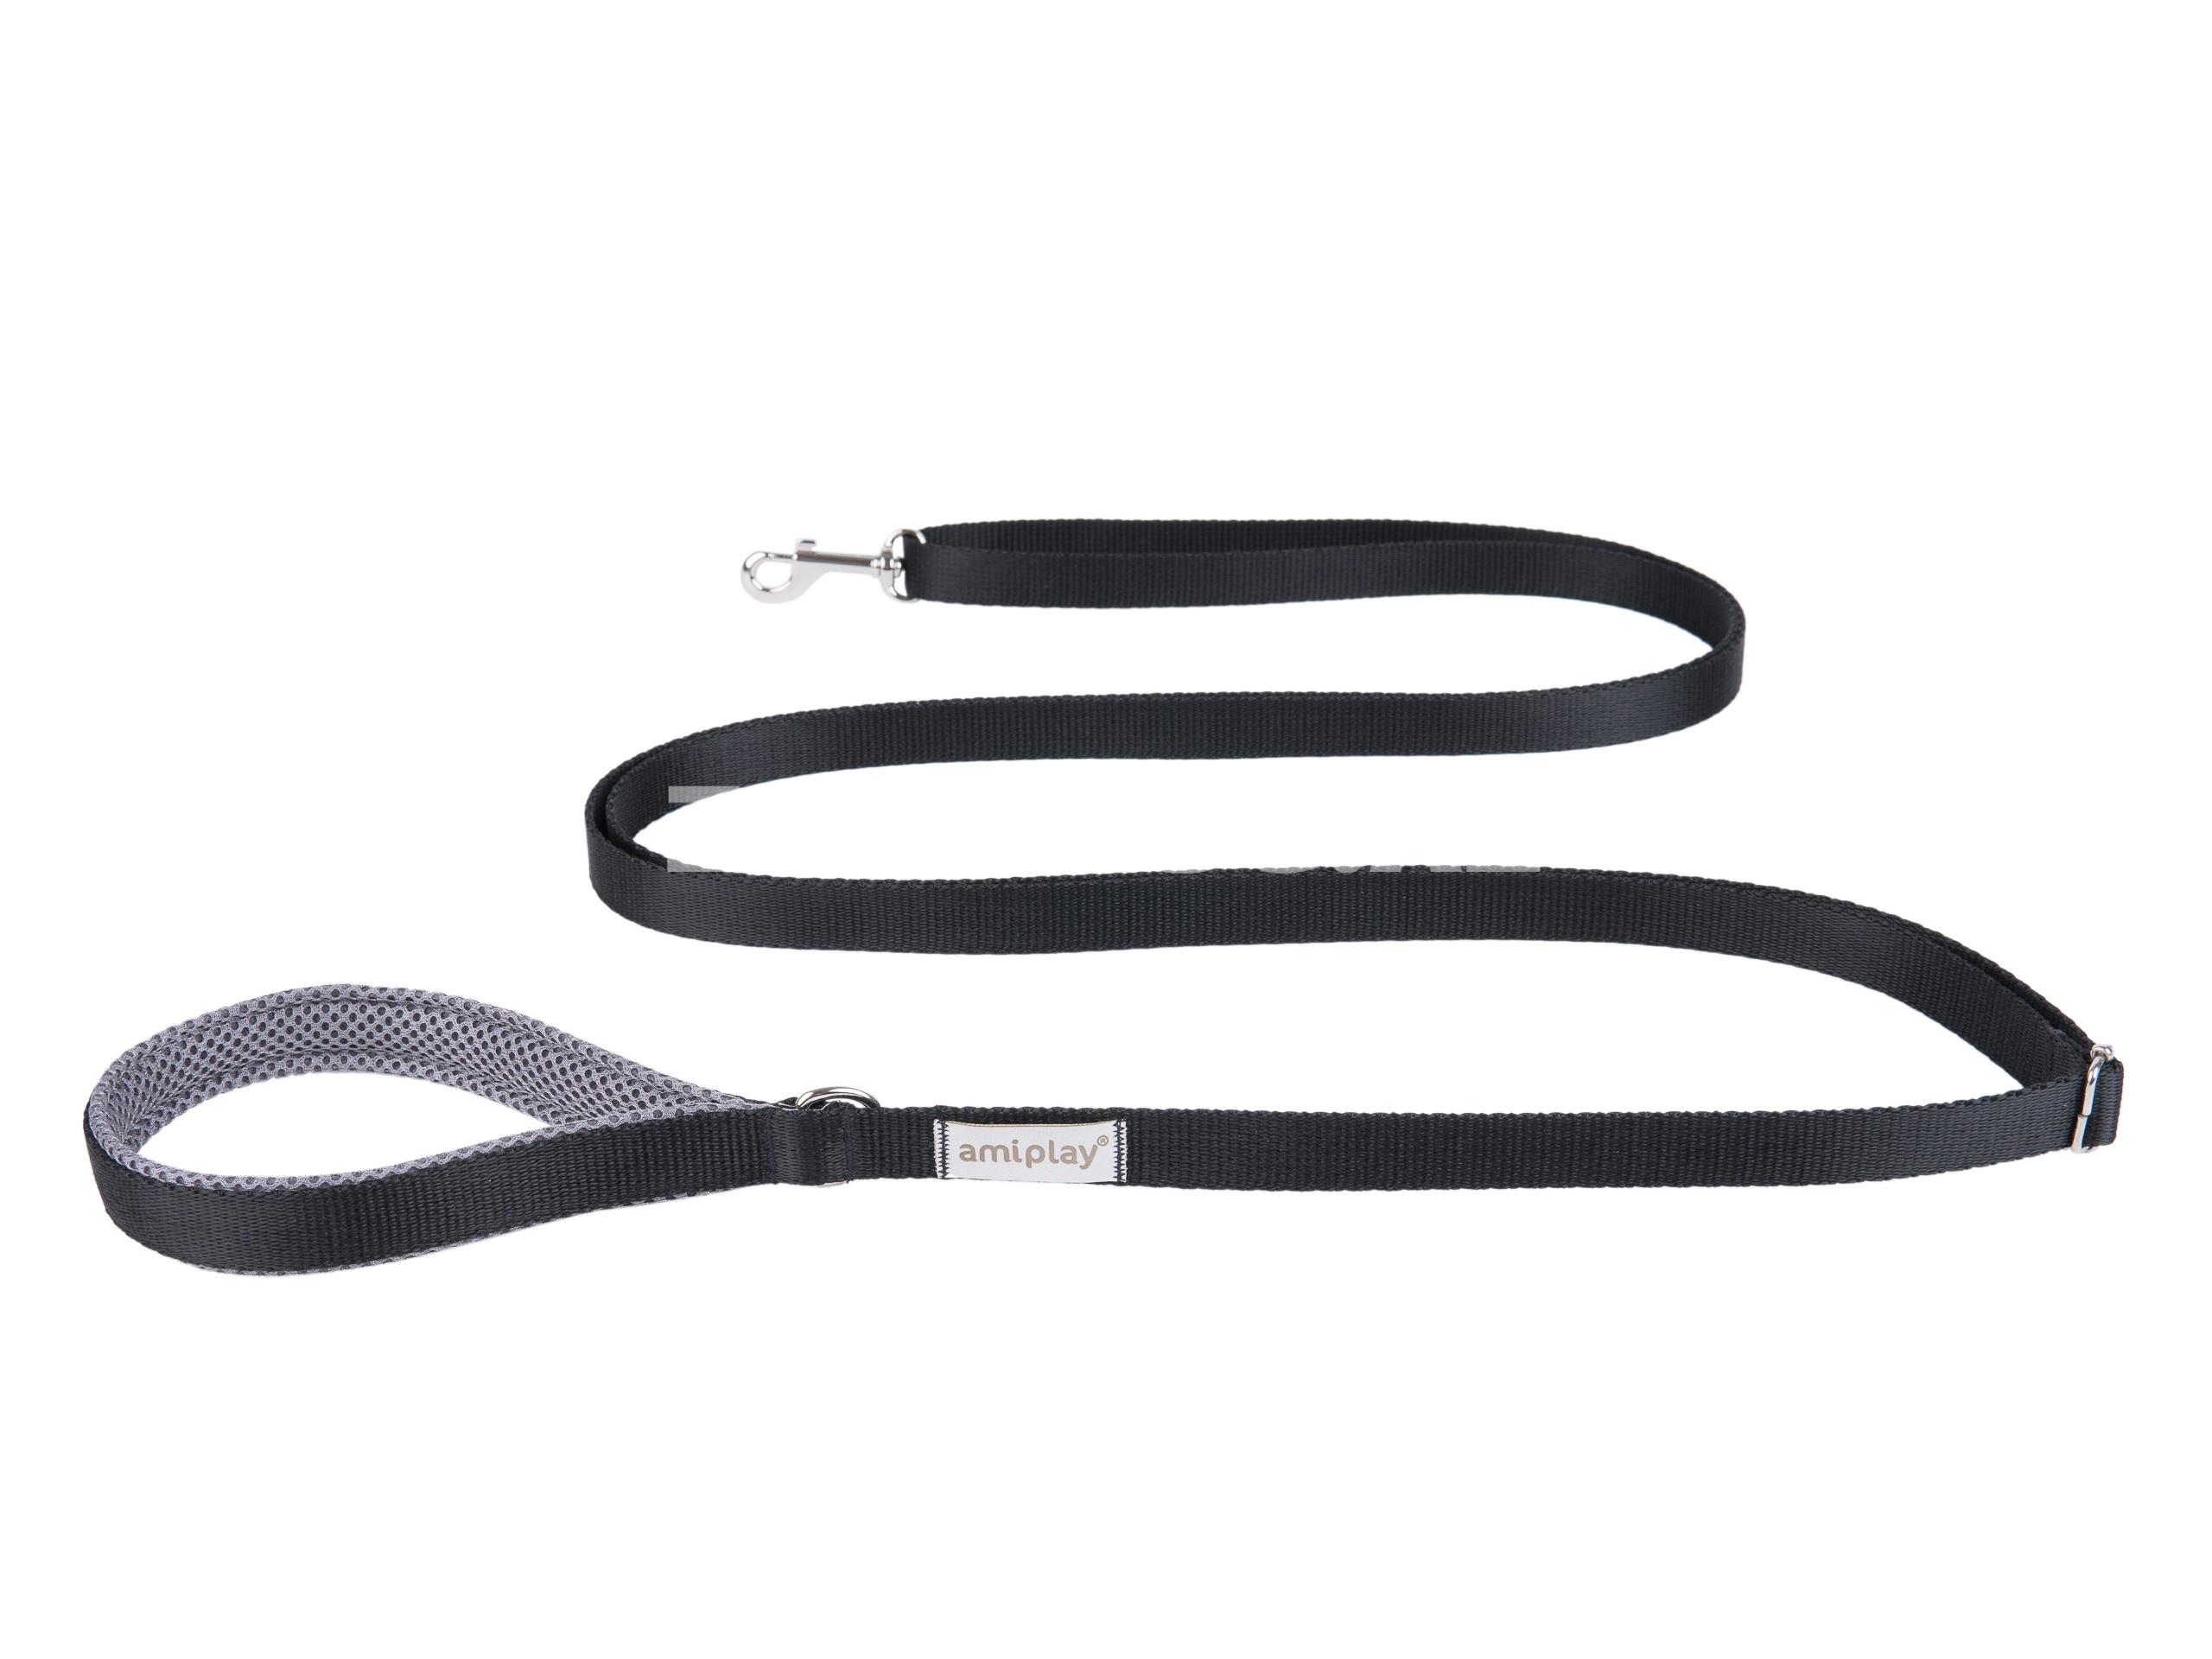 Поводок Amiplay Adjustable Leash easy fix. Цвет: Чёрный.  Размер S. Длина 160-300x1.5 см.